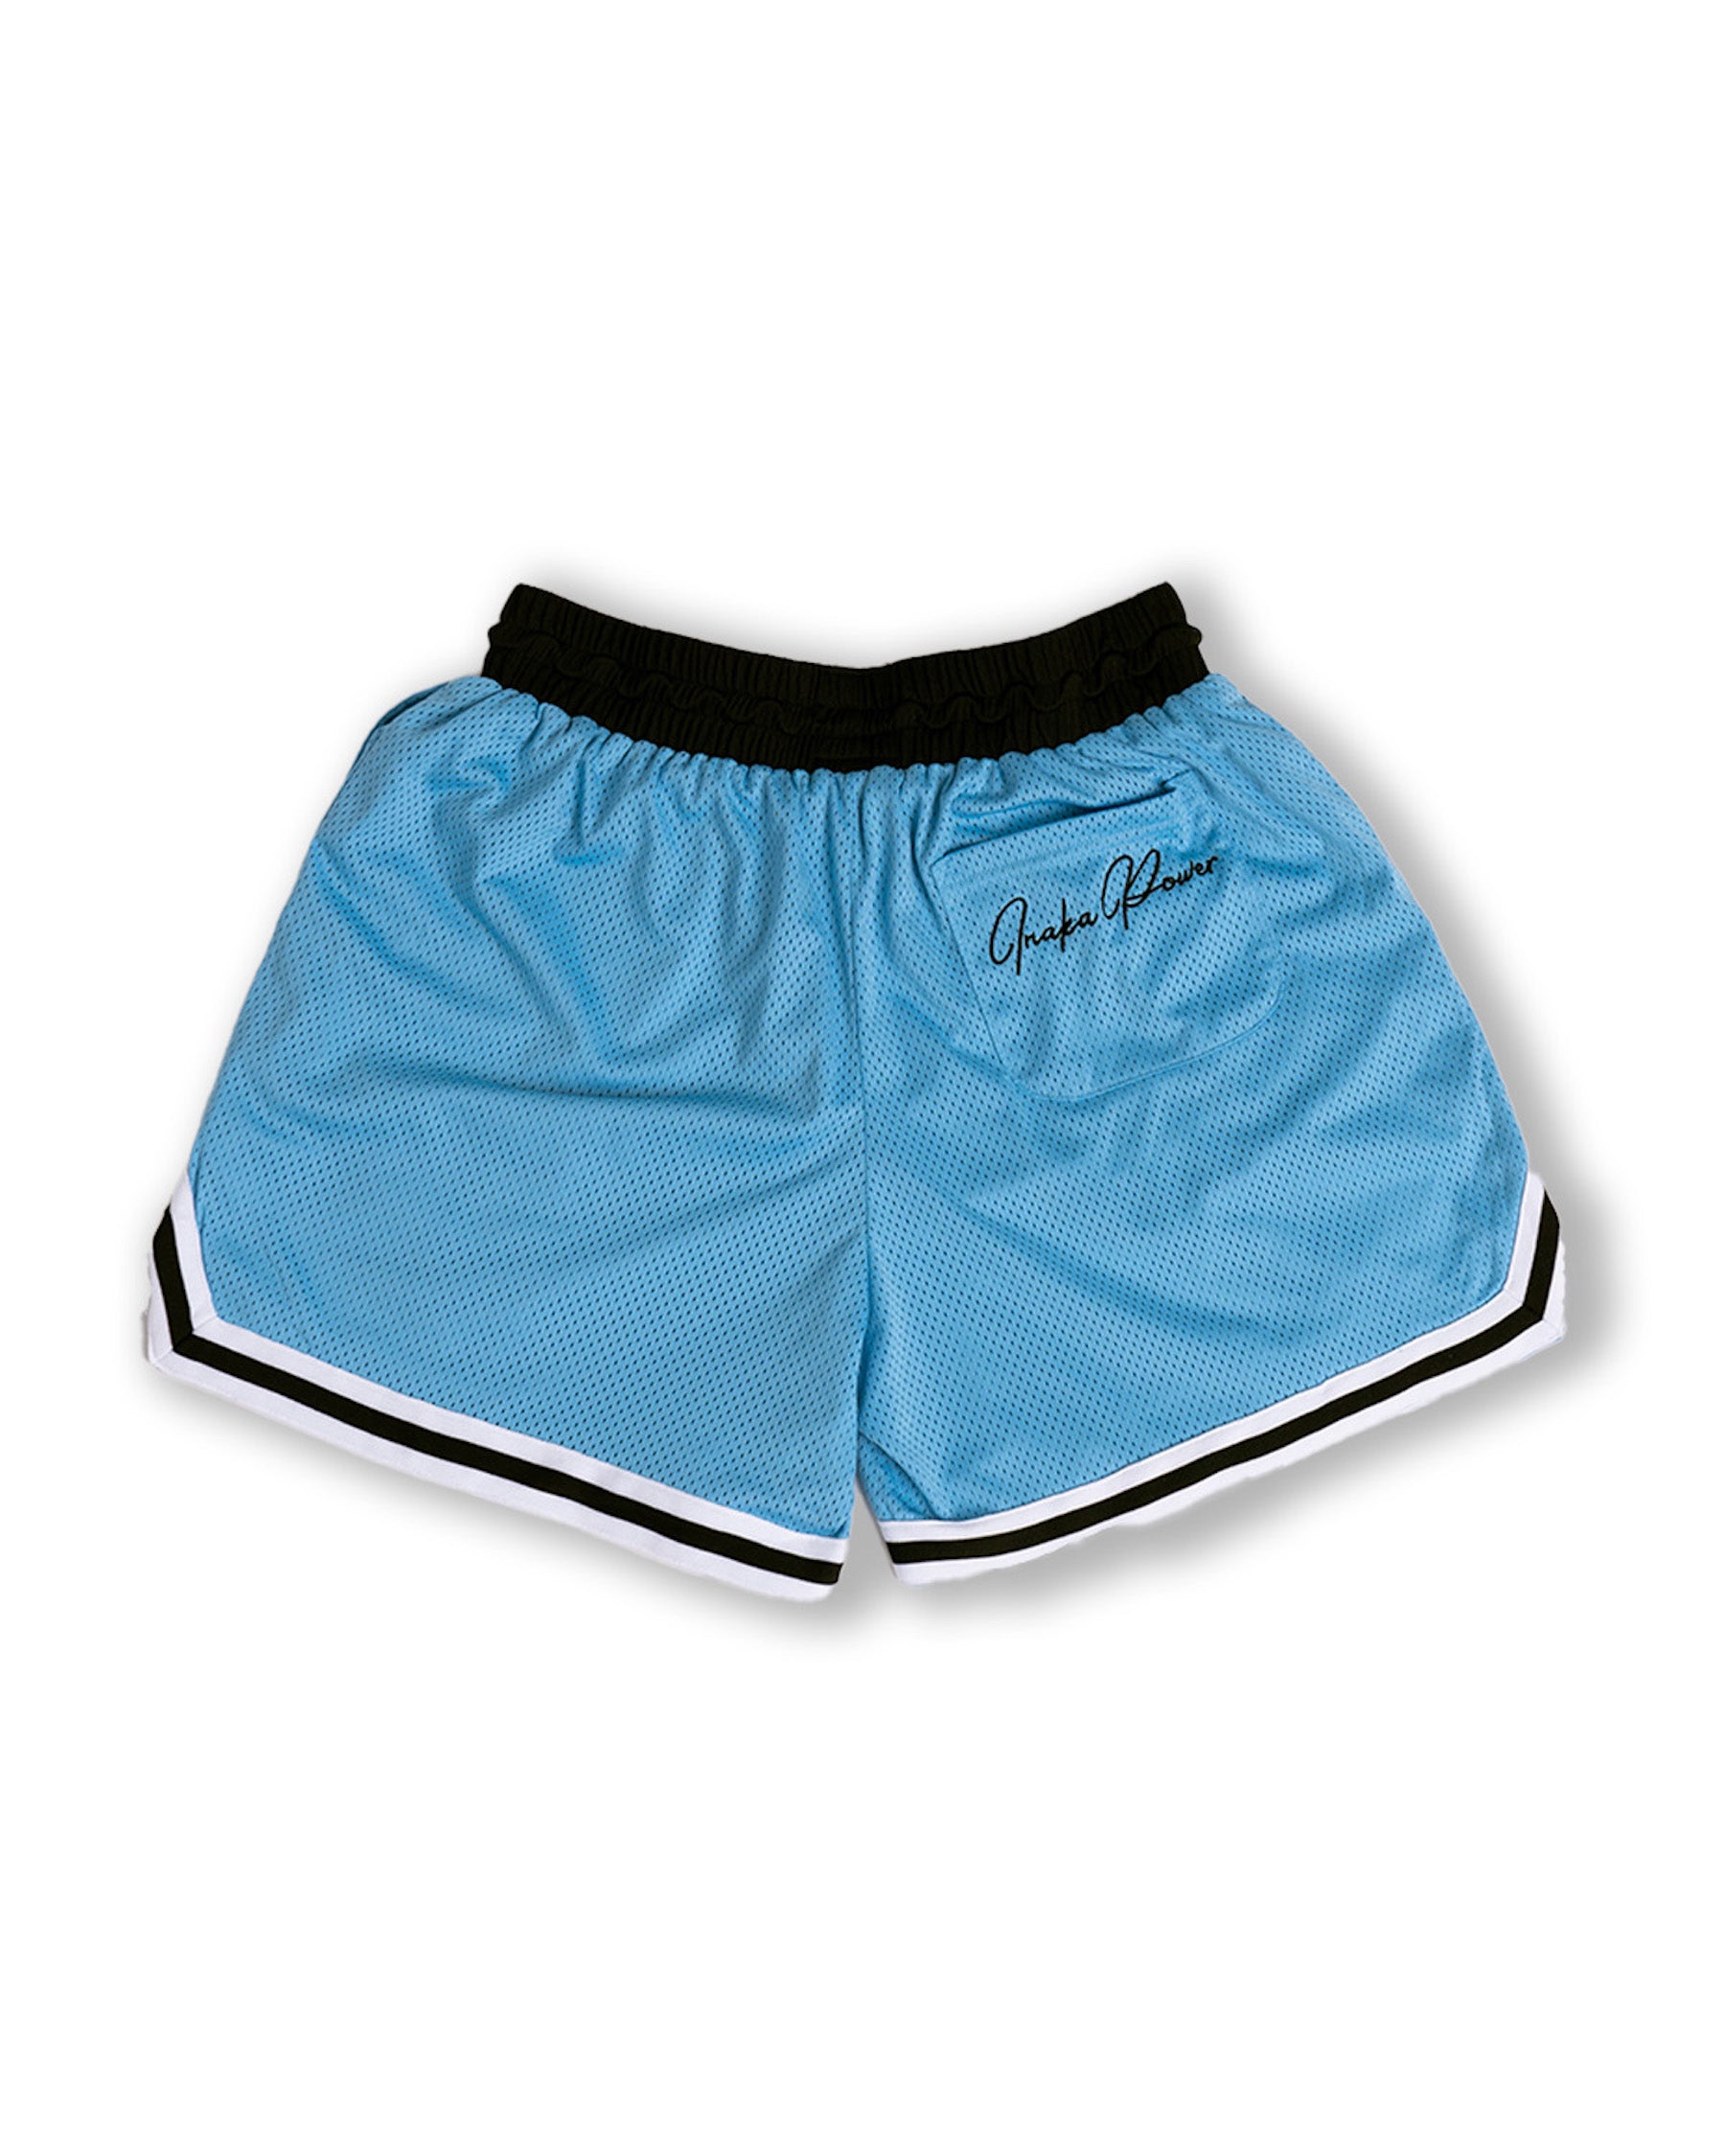 Men's League Mesh Shorts - Retro Blue